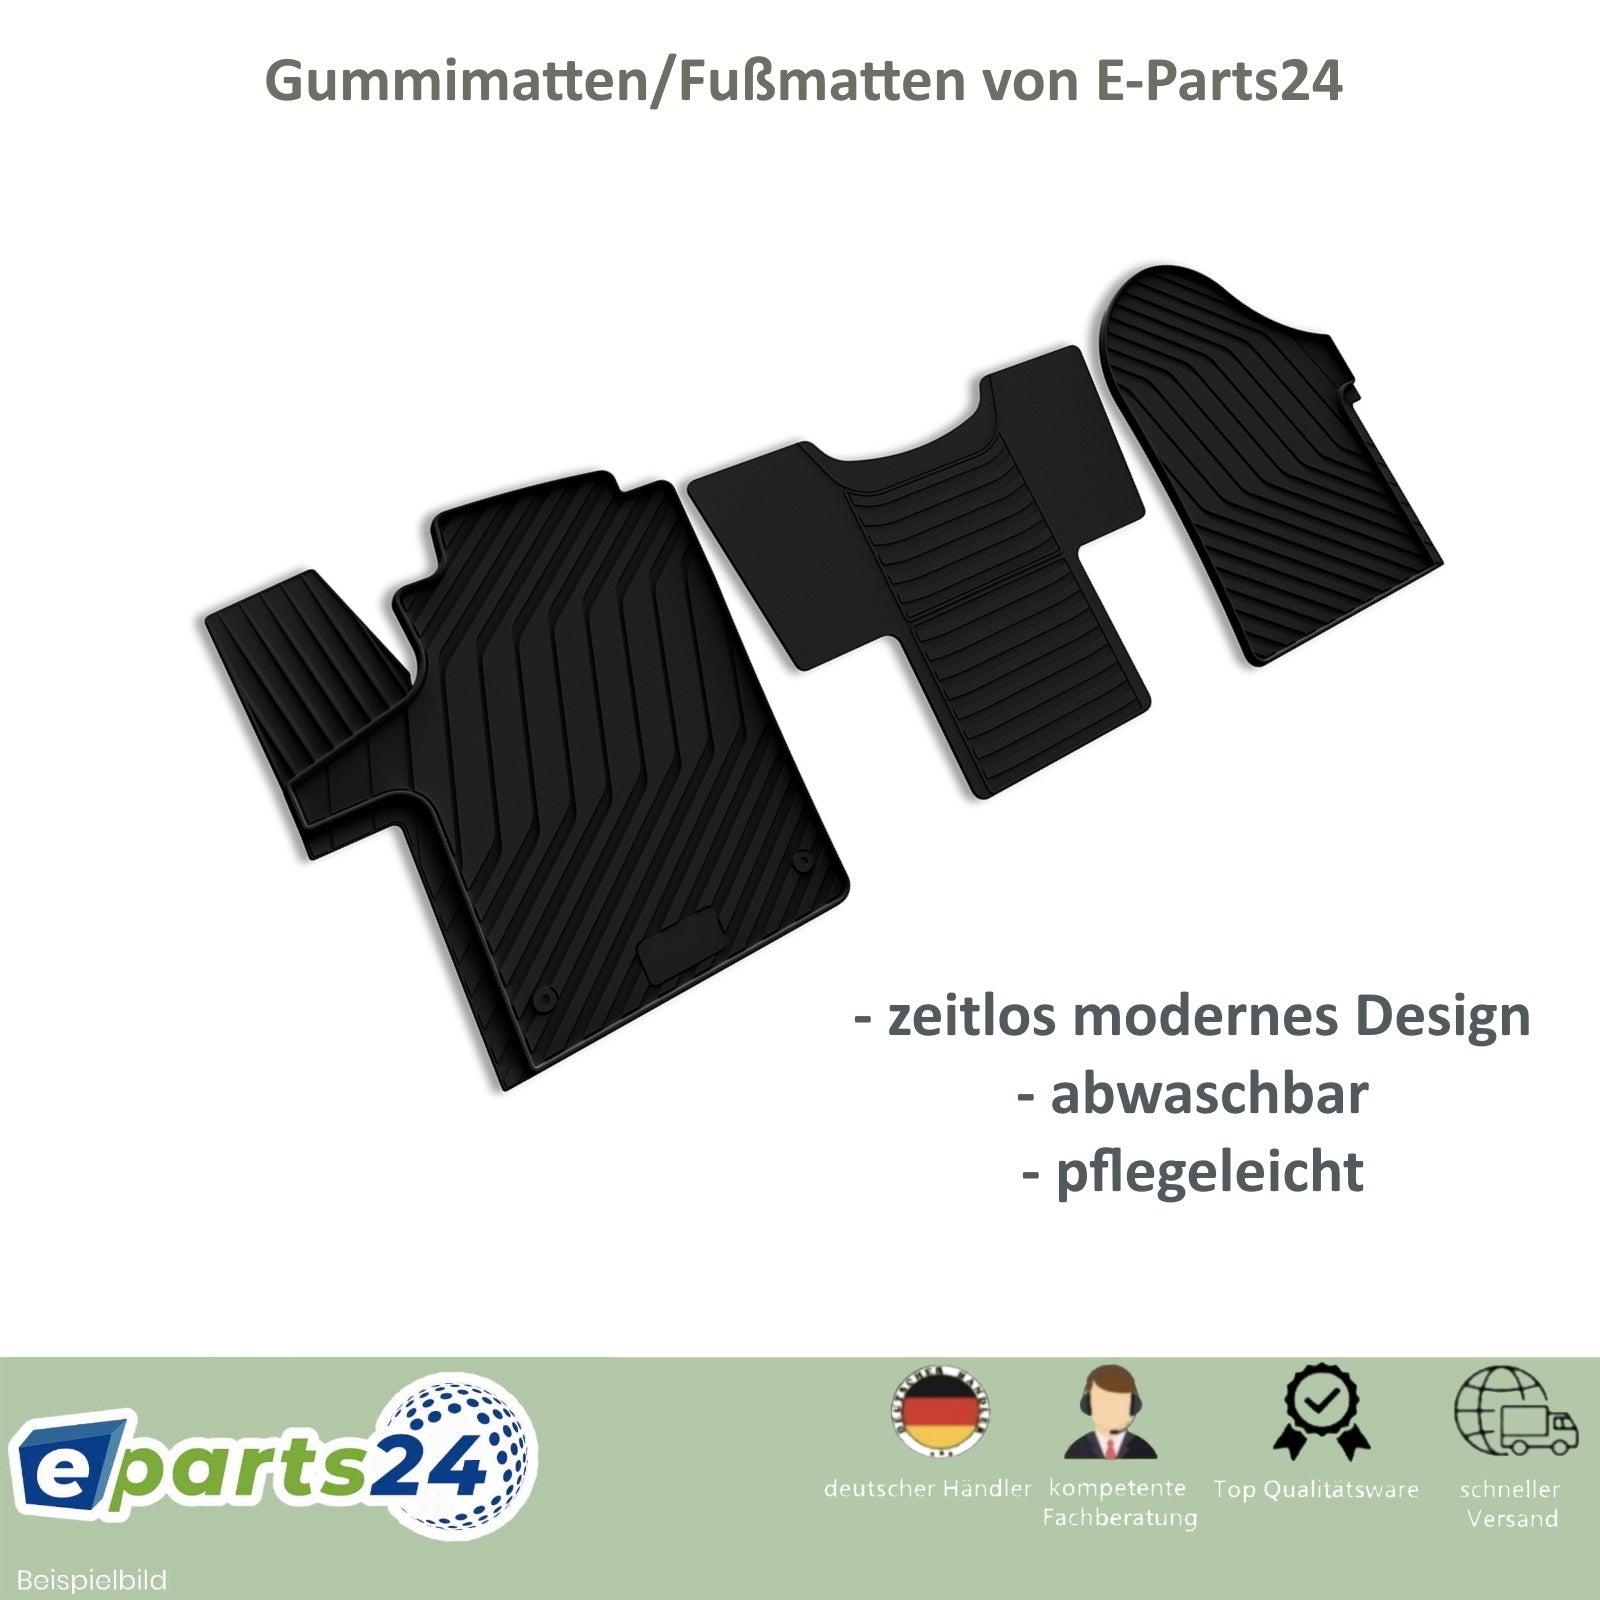 Automatten Fußmatten Autoteppich für VW UP ab 2011- Cross UP 2013- pas –  E-Parts24